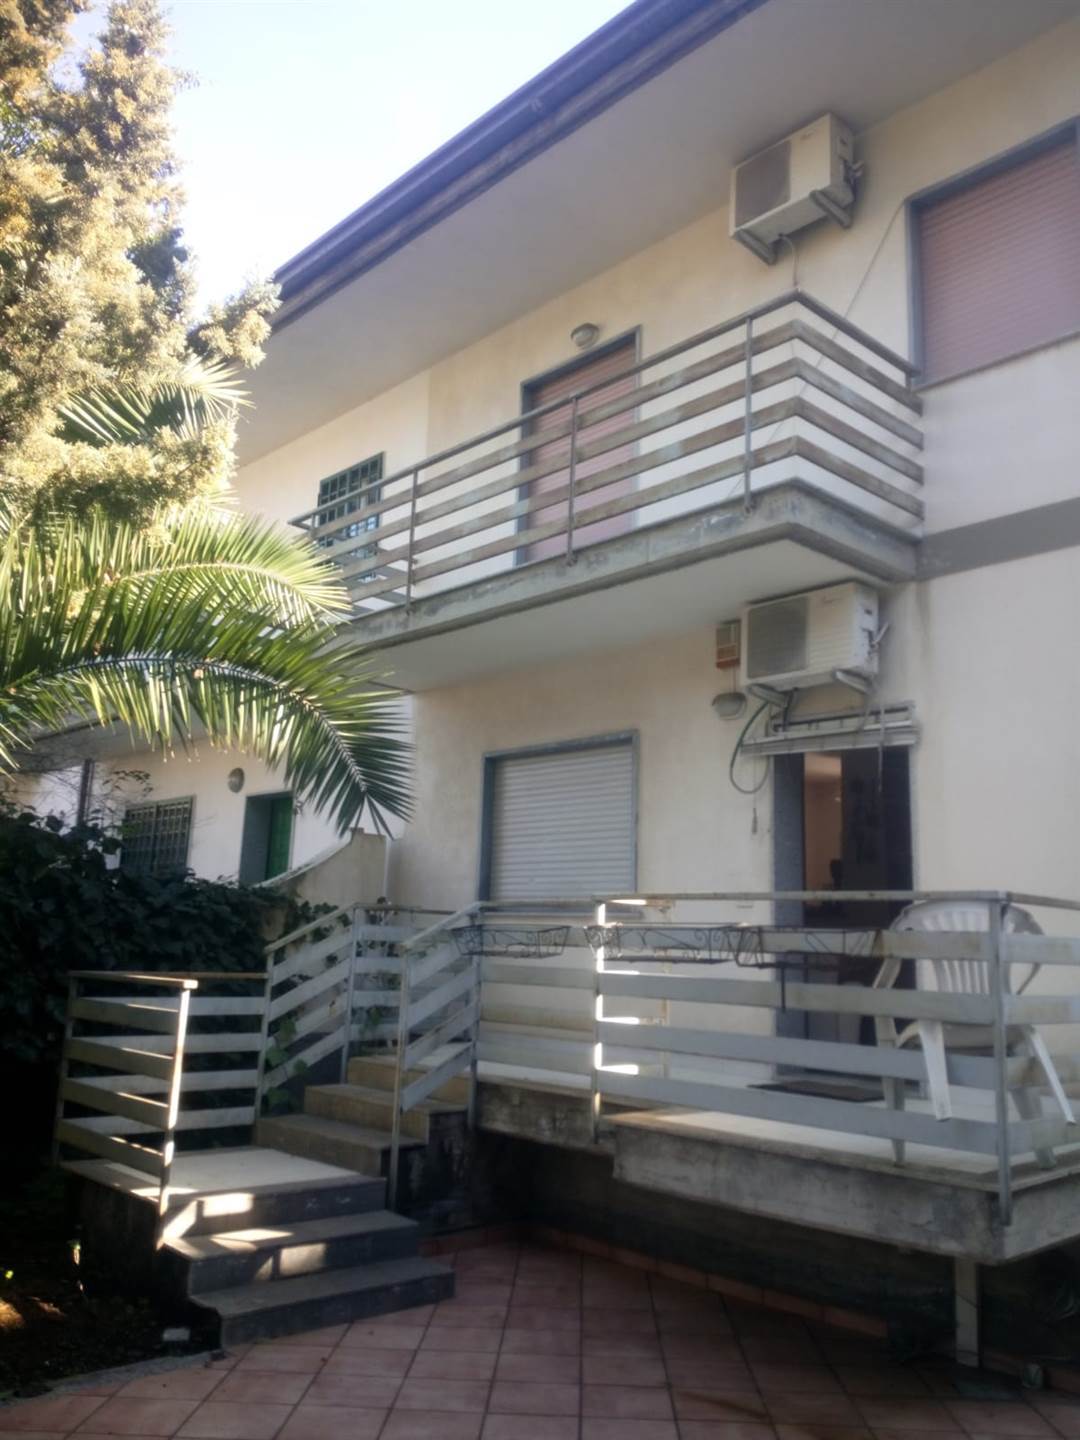 Villa a Schiera in vendita a Mascalucia, 4 locali, prezzo € 225.000 | PortaleAgenzieImmobiliari.it